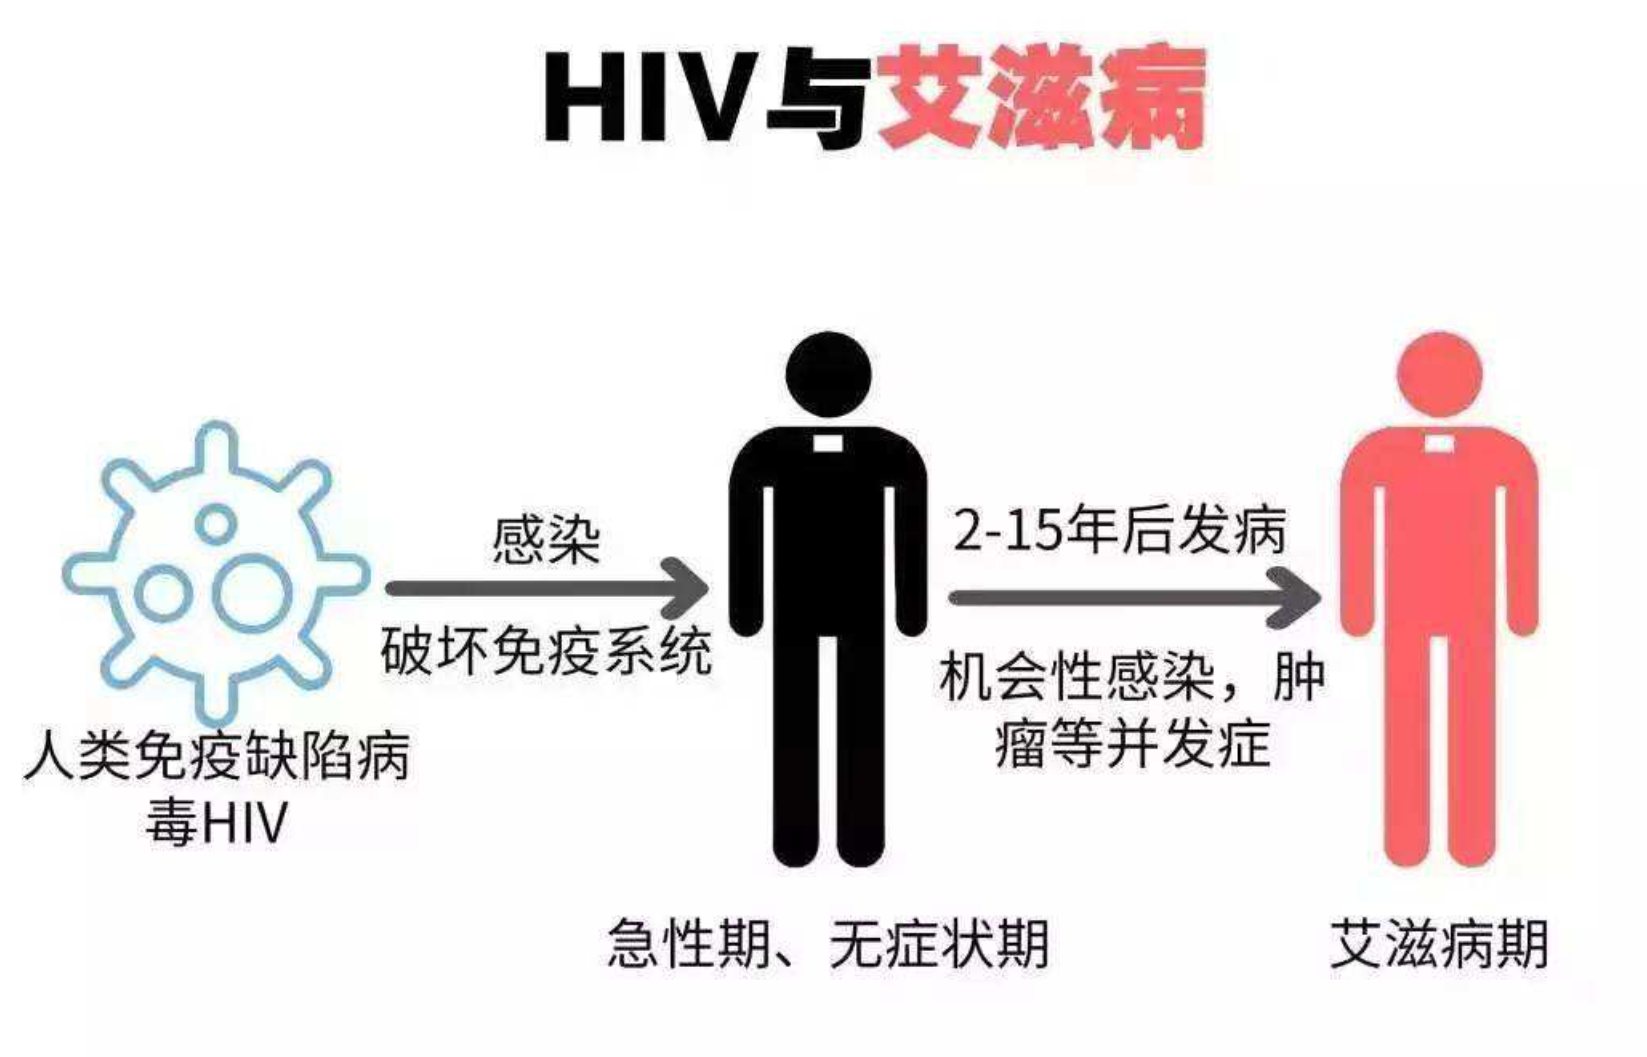 二,艾滋病的传播途径特殊新冠肺炎的传播途径为呼吸道飞沫传播,感染者